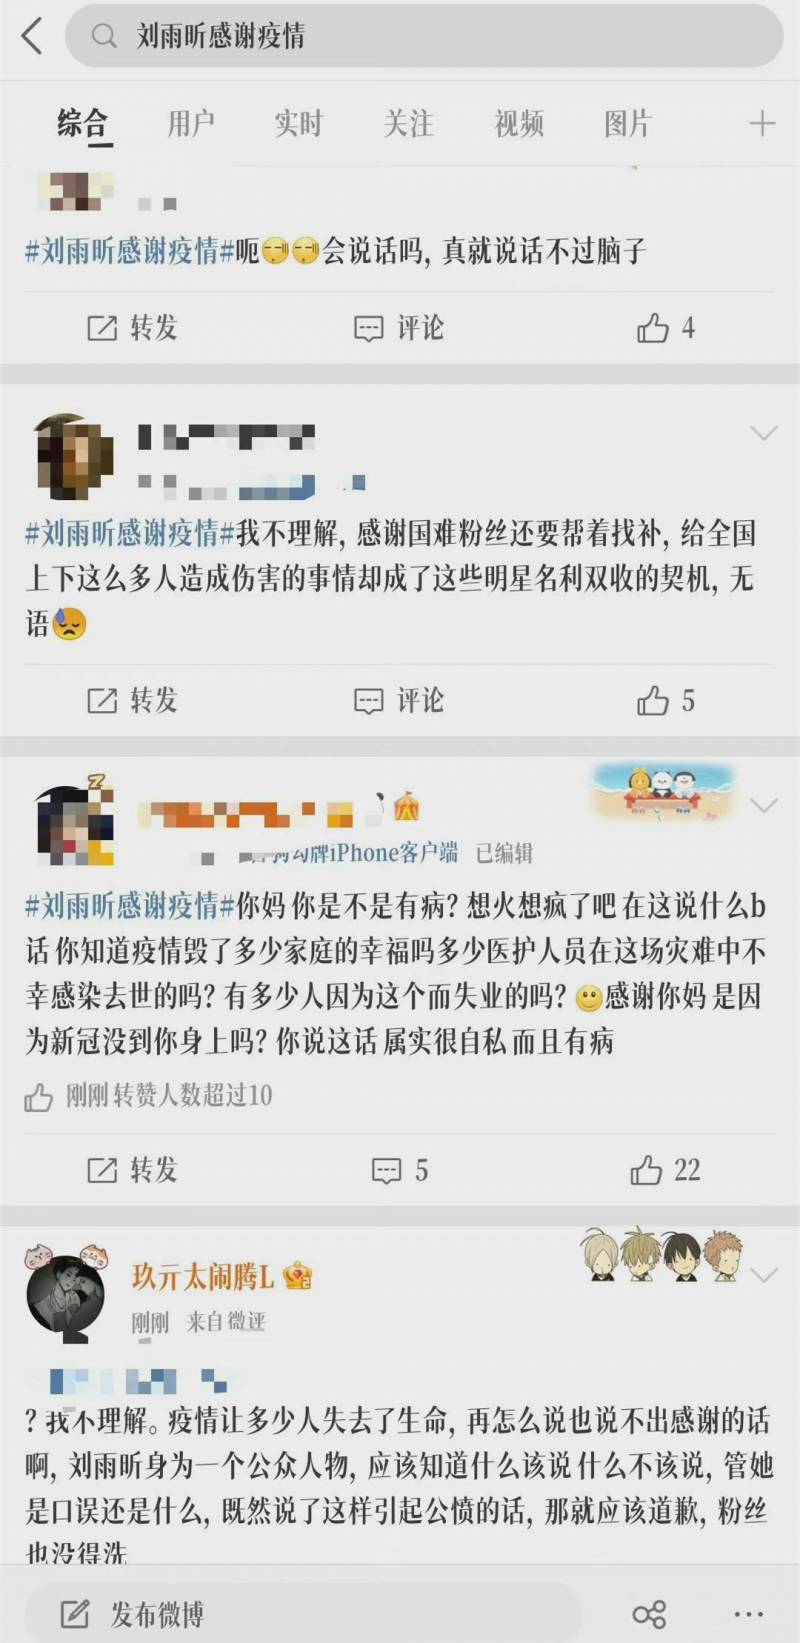 刘雨昕就争议言论道歉，反思“感谢疫情”表述不当